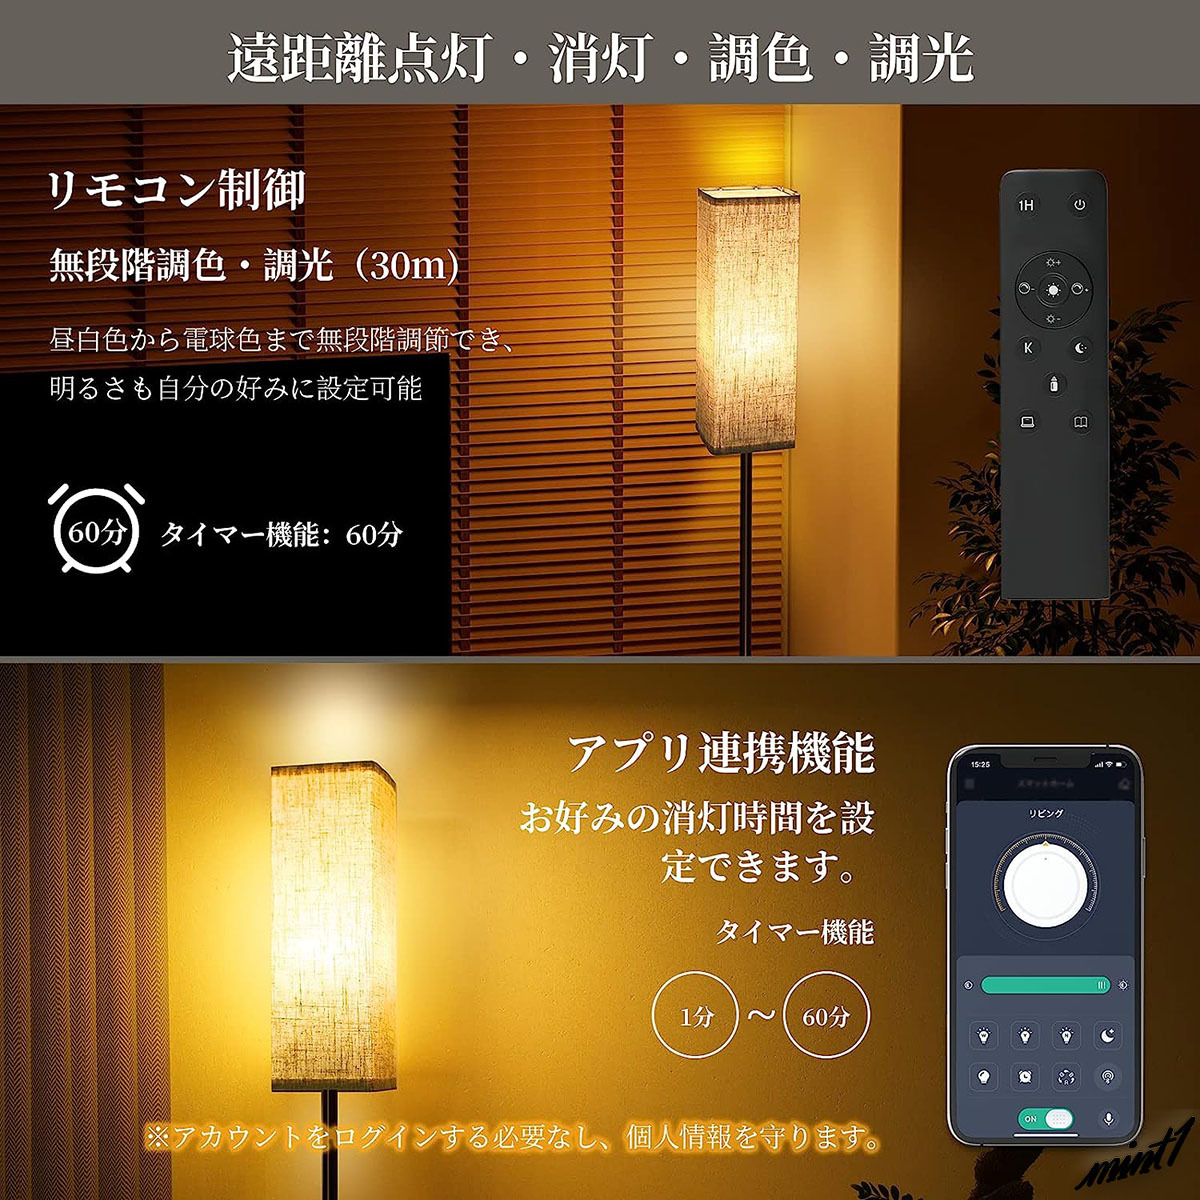 【雰囲気のあるお部屋作りに】 フロアスタンド LED電球付き メモリー機能 自動消灯 3段階調光 フットスイッチ インテリア 間接照明